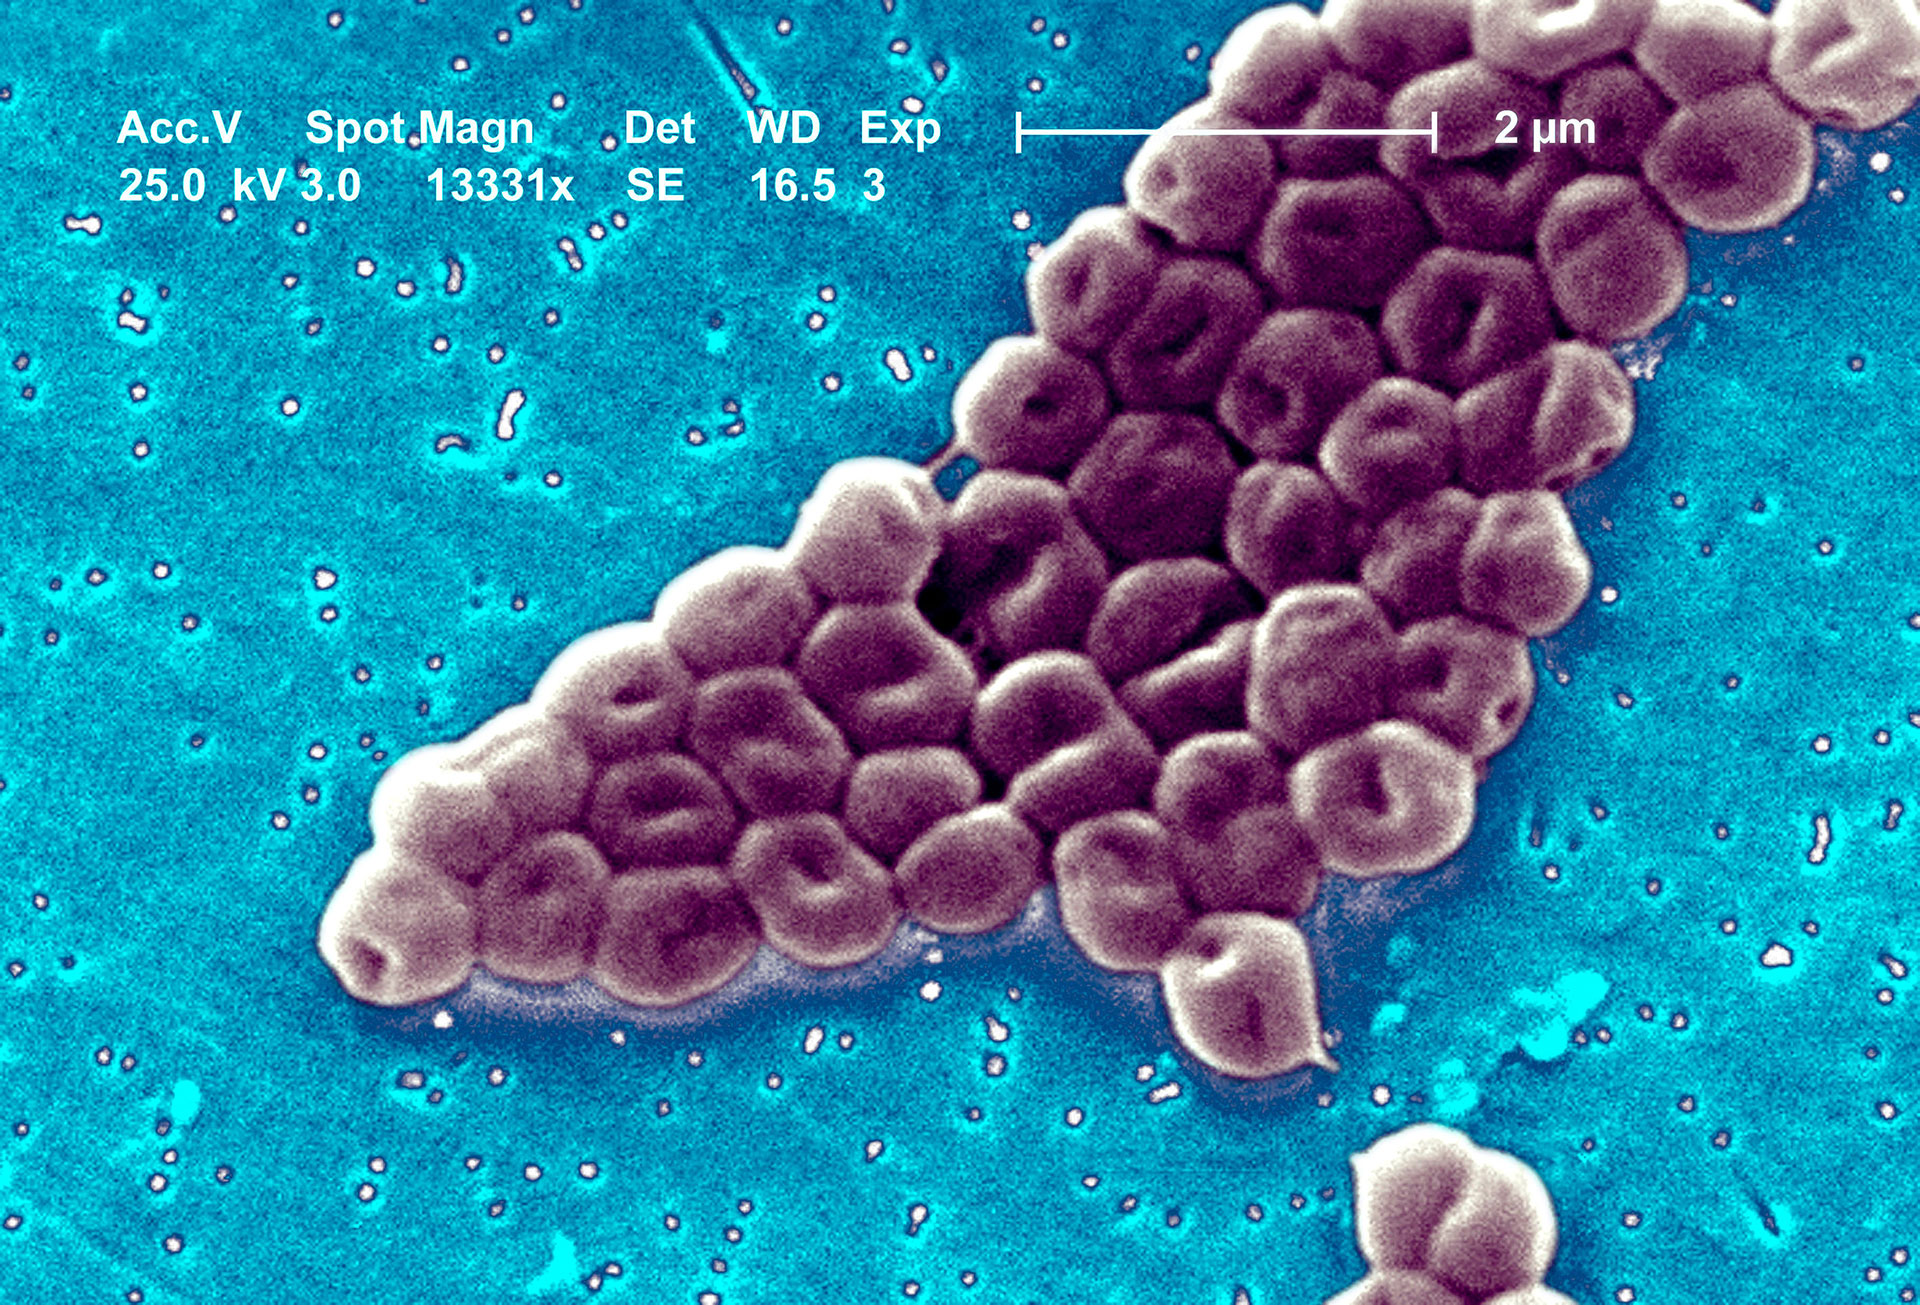 La Acinetobacter baumannii causa neumonía, sepsis e infecciones en heridas (Grosbygroup)